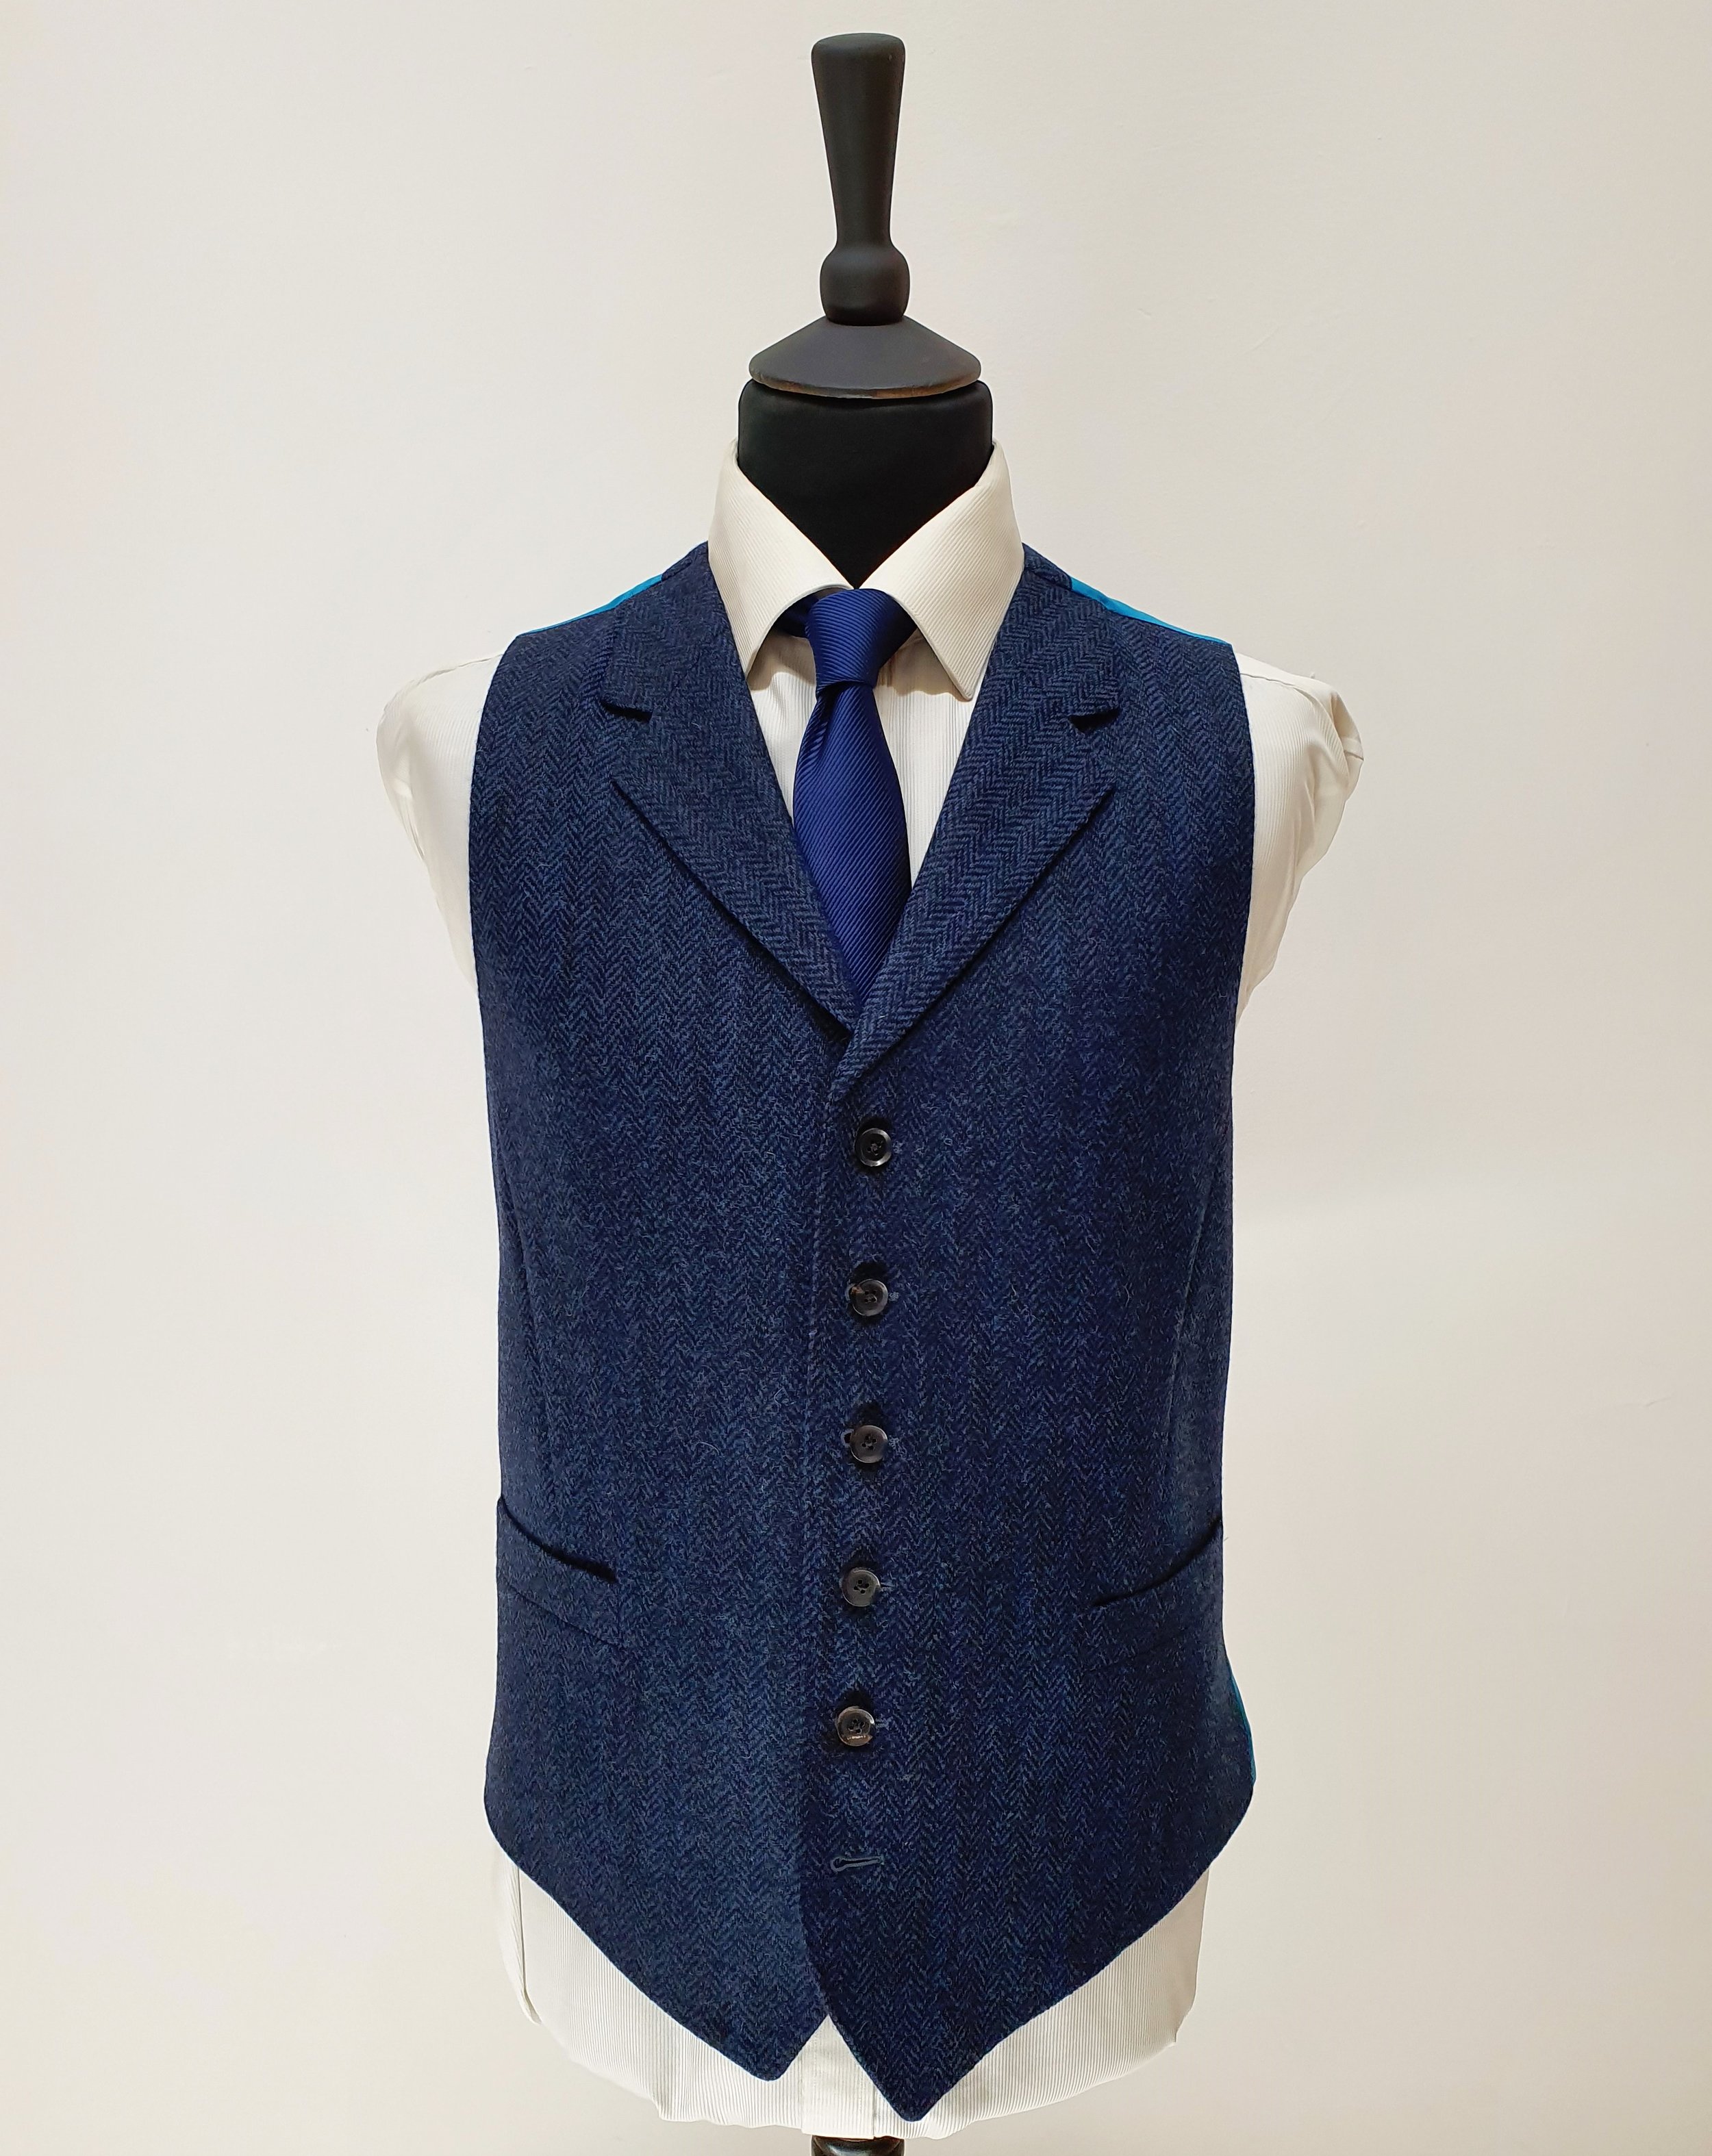 3 Piece Suit in Holland and Sherry Blue Herringbone Tweed (2).jpg